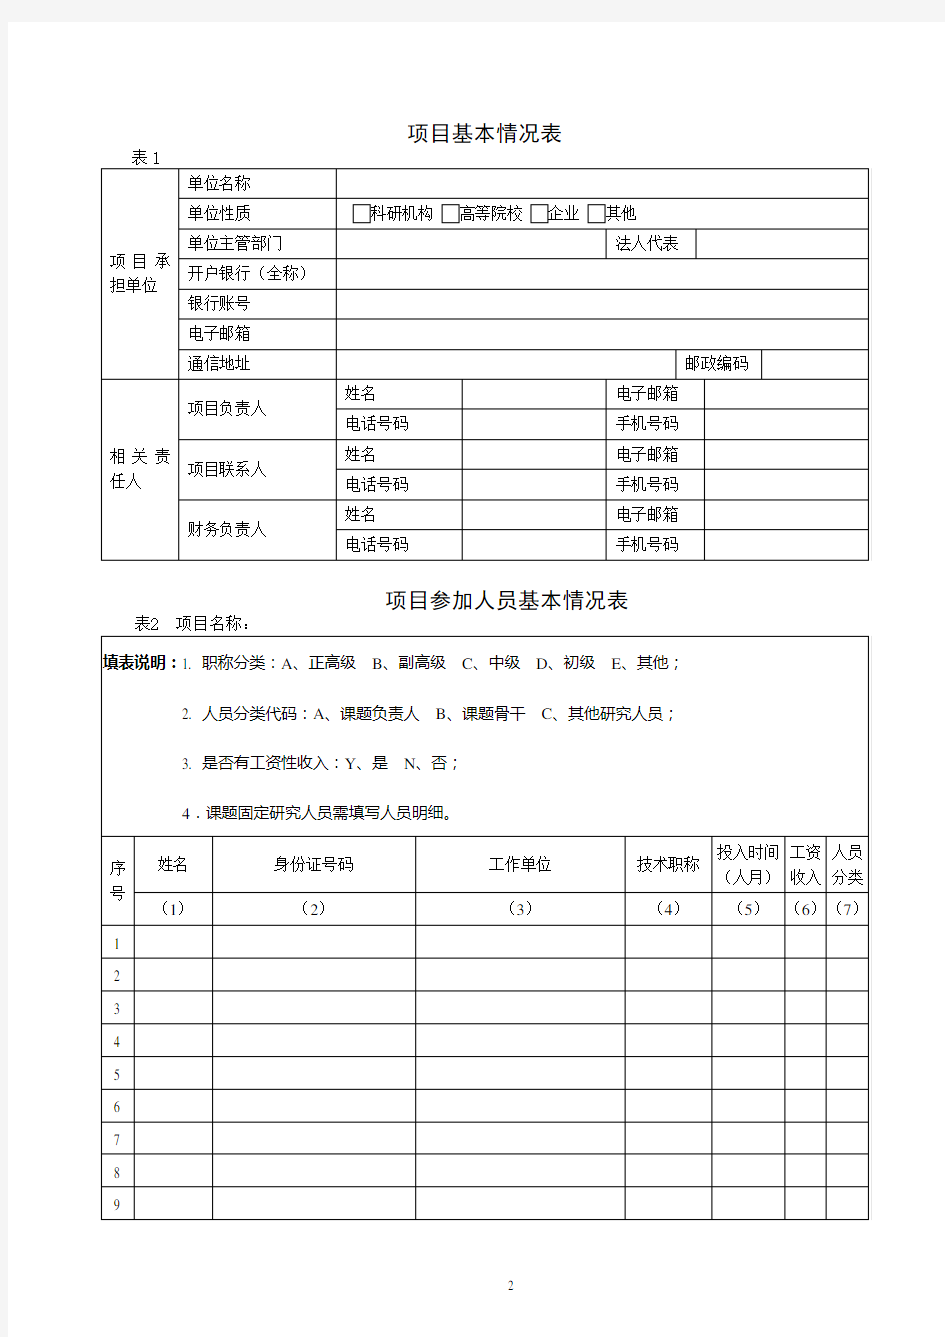 四川省科技厅项目经费预算书模板